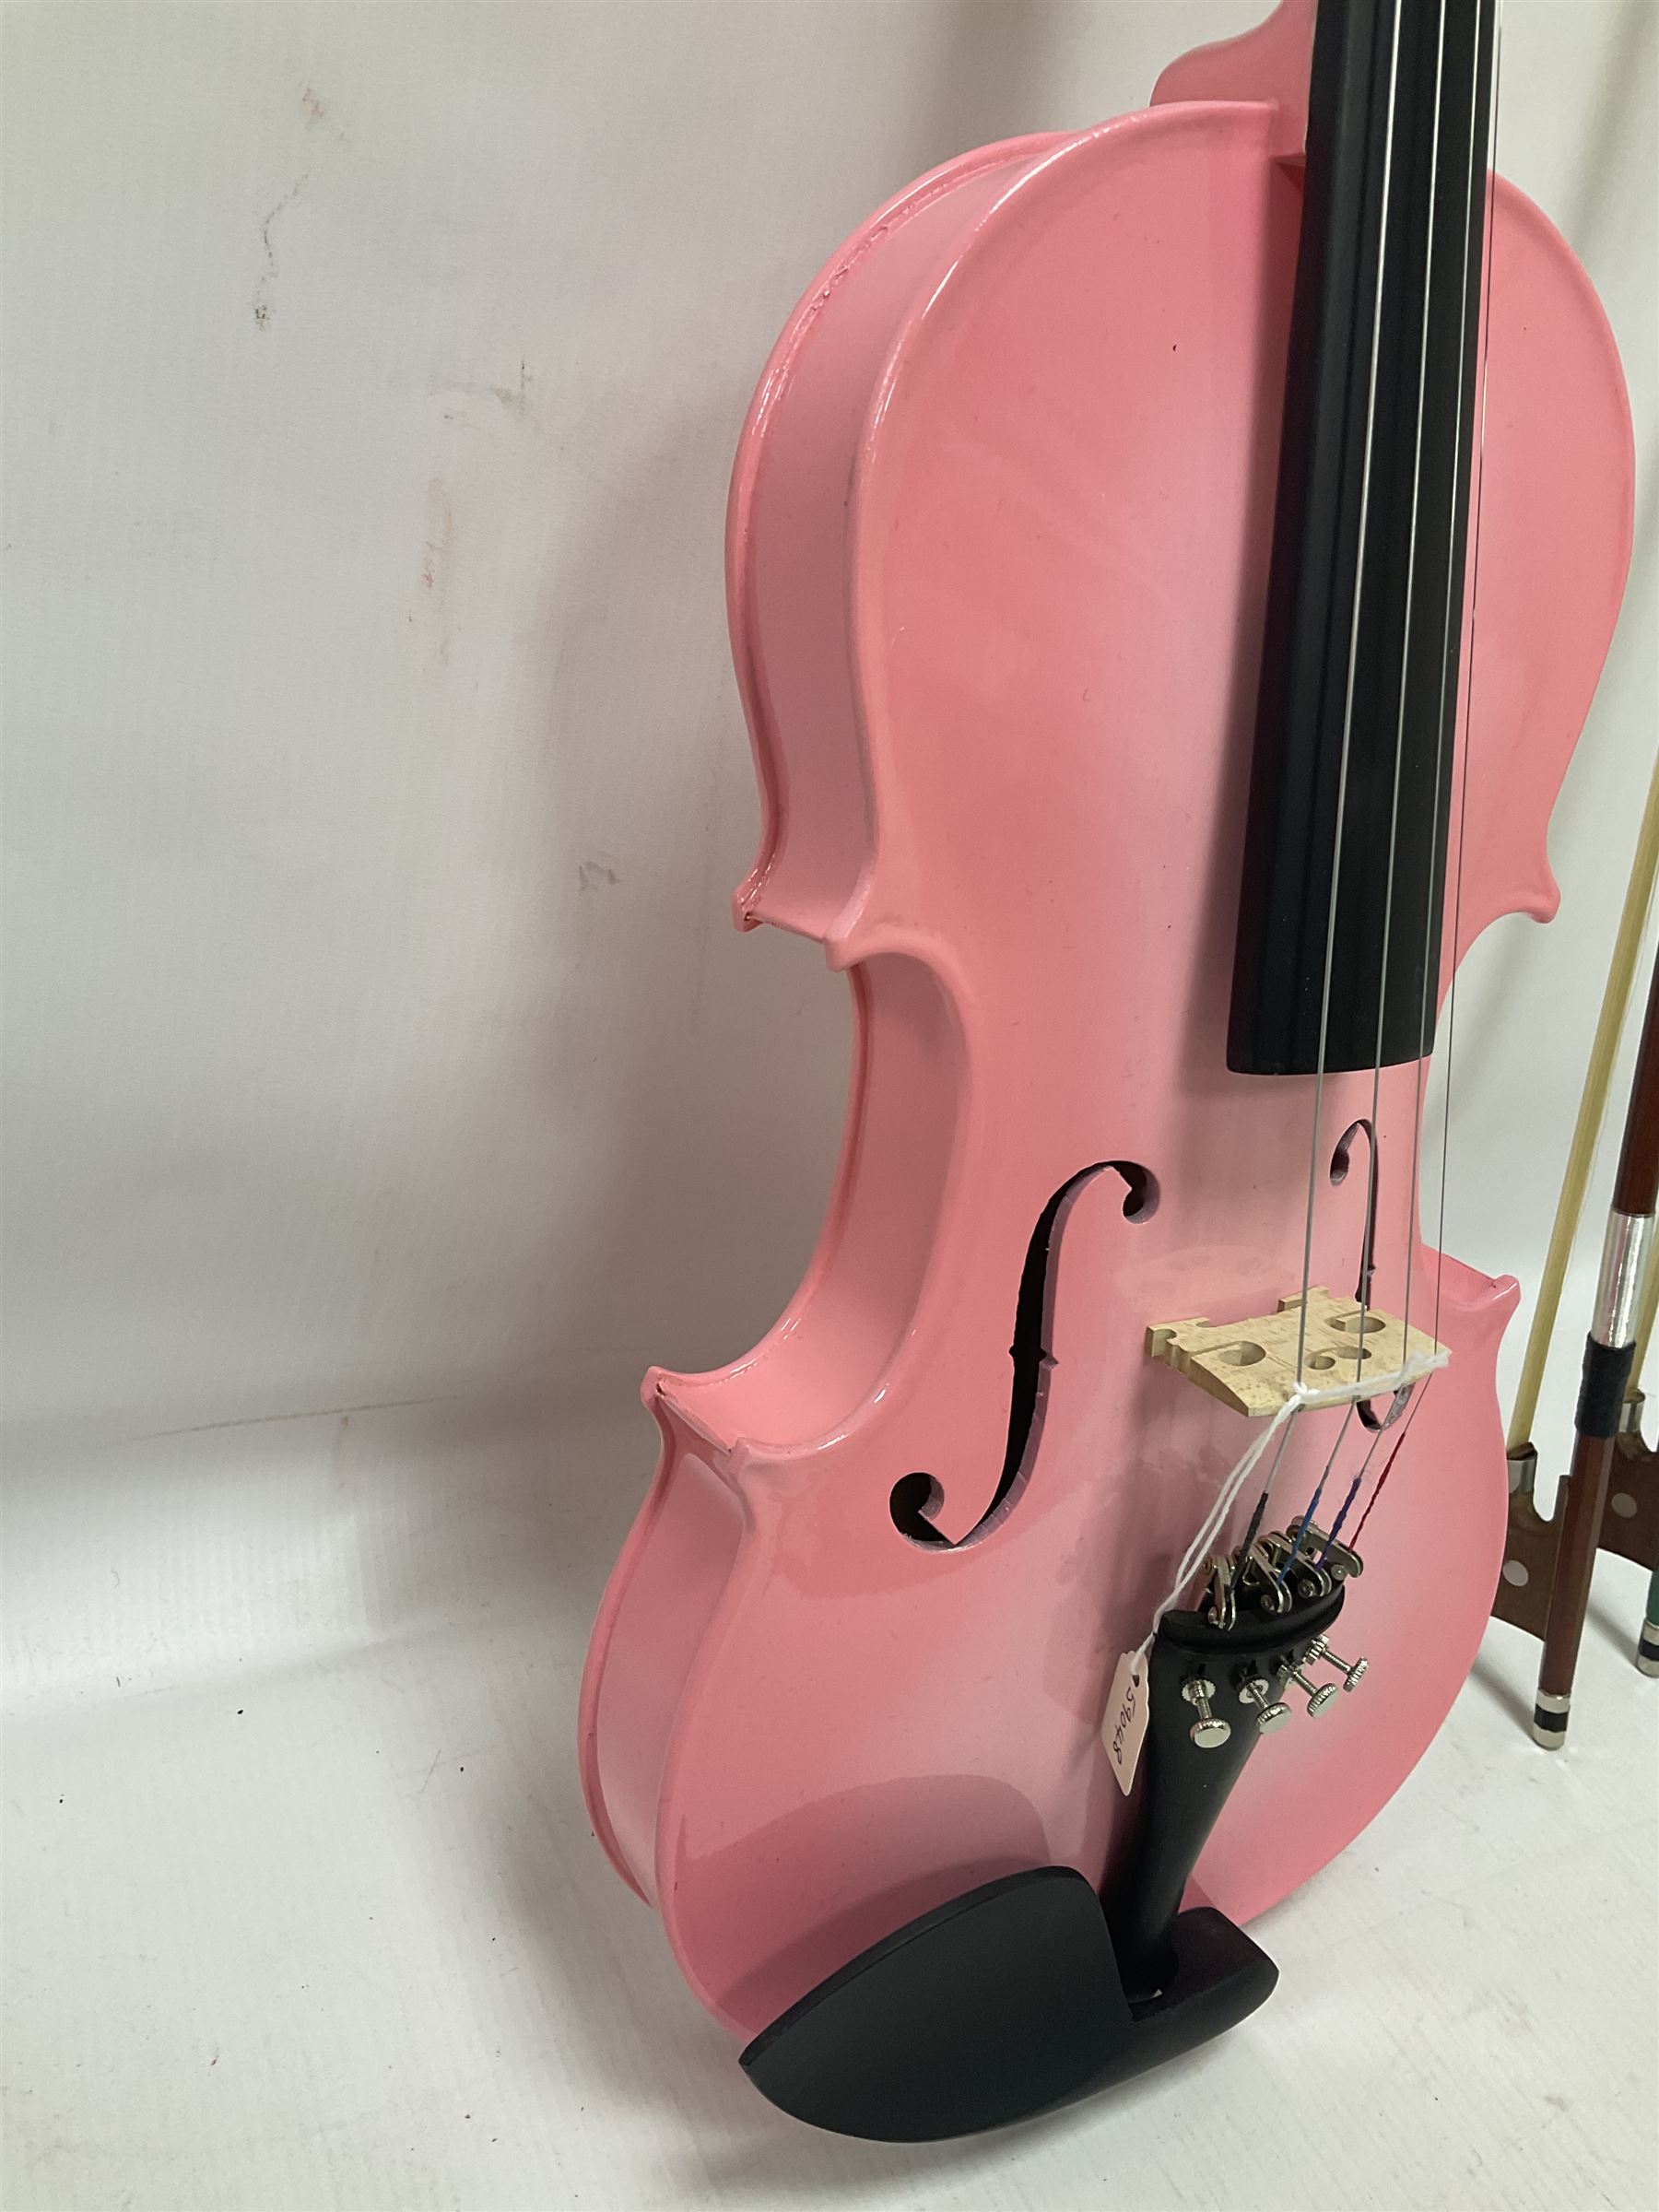 Zest full size pink violin - Image 8 of 32